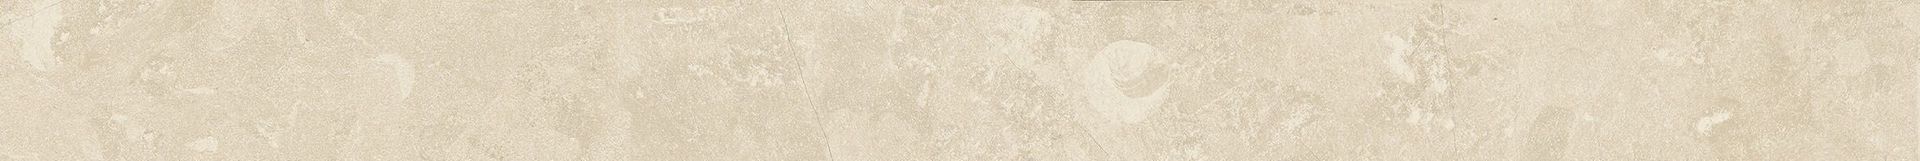 Плитка из керамогранита матовая Italon Дженезис 7.2x60 белый (610130002152) плитка из керамогранита матовая italon дженезис 7 2x60 белый 610130002152